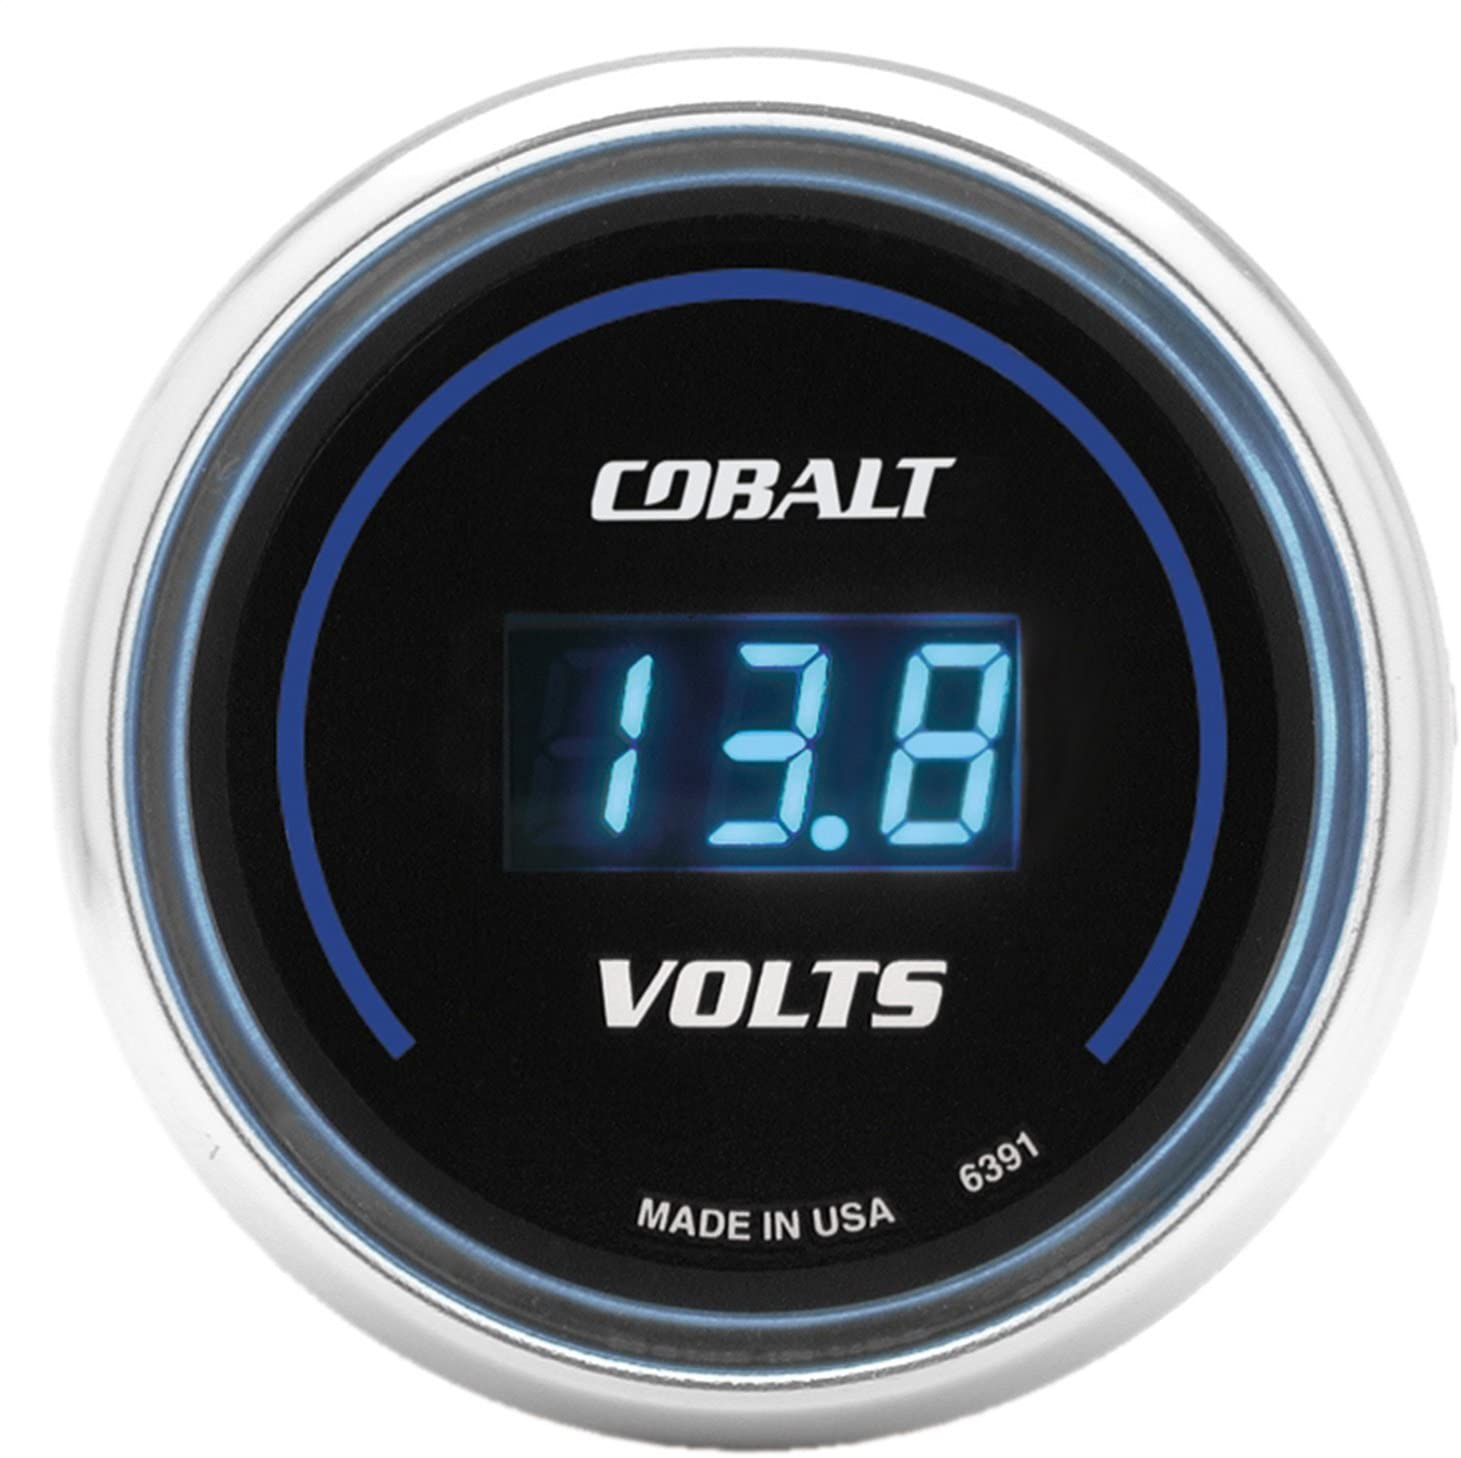 Auto Meter 6391 Cobalt Digital Voltmeter Gauge